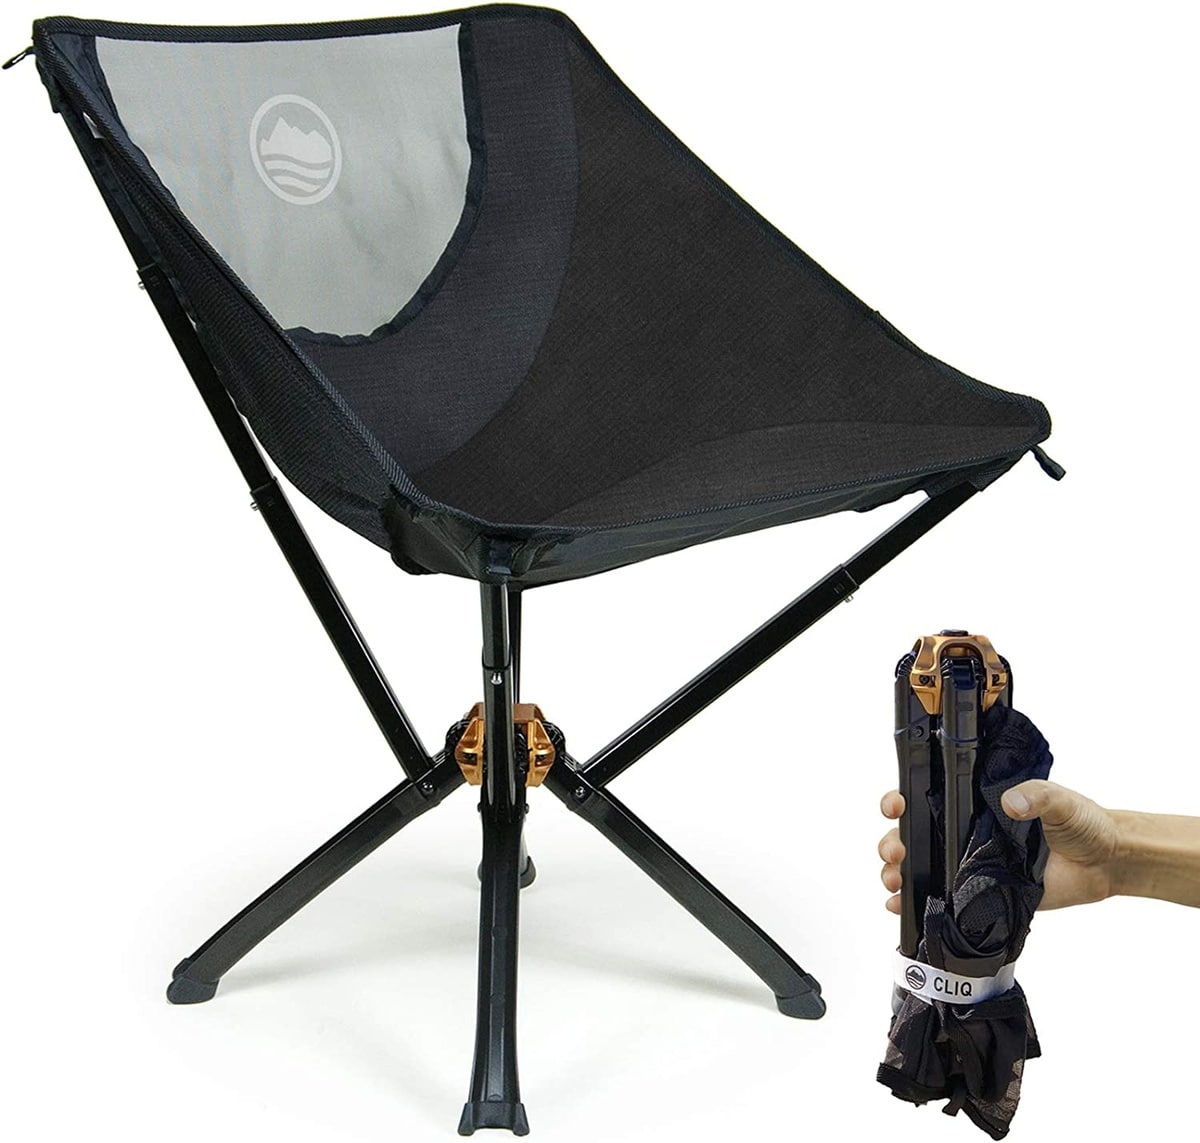 cliq camping chair